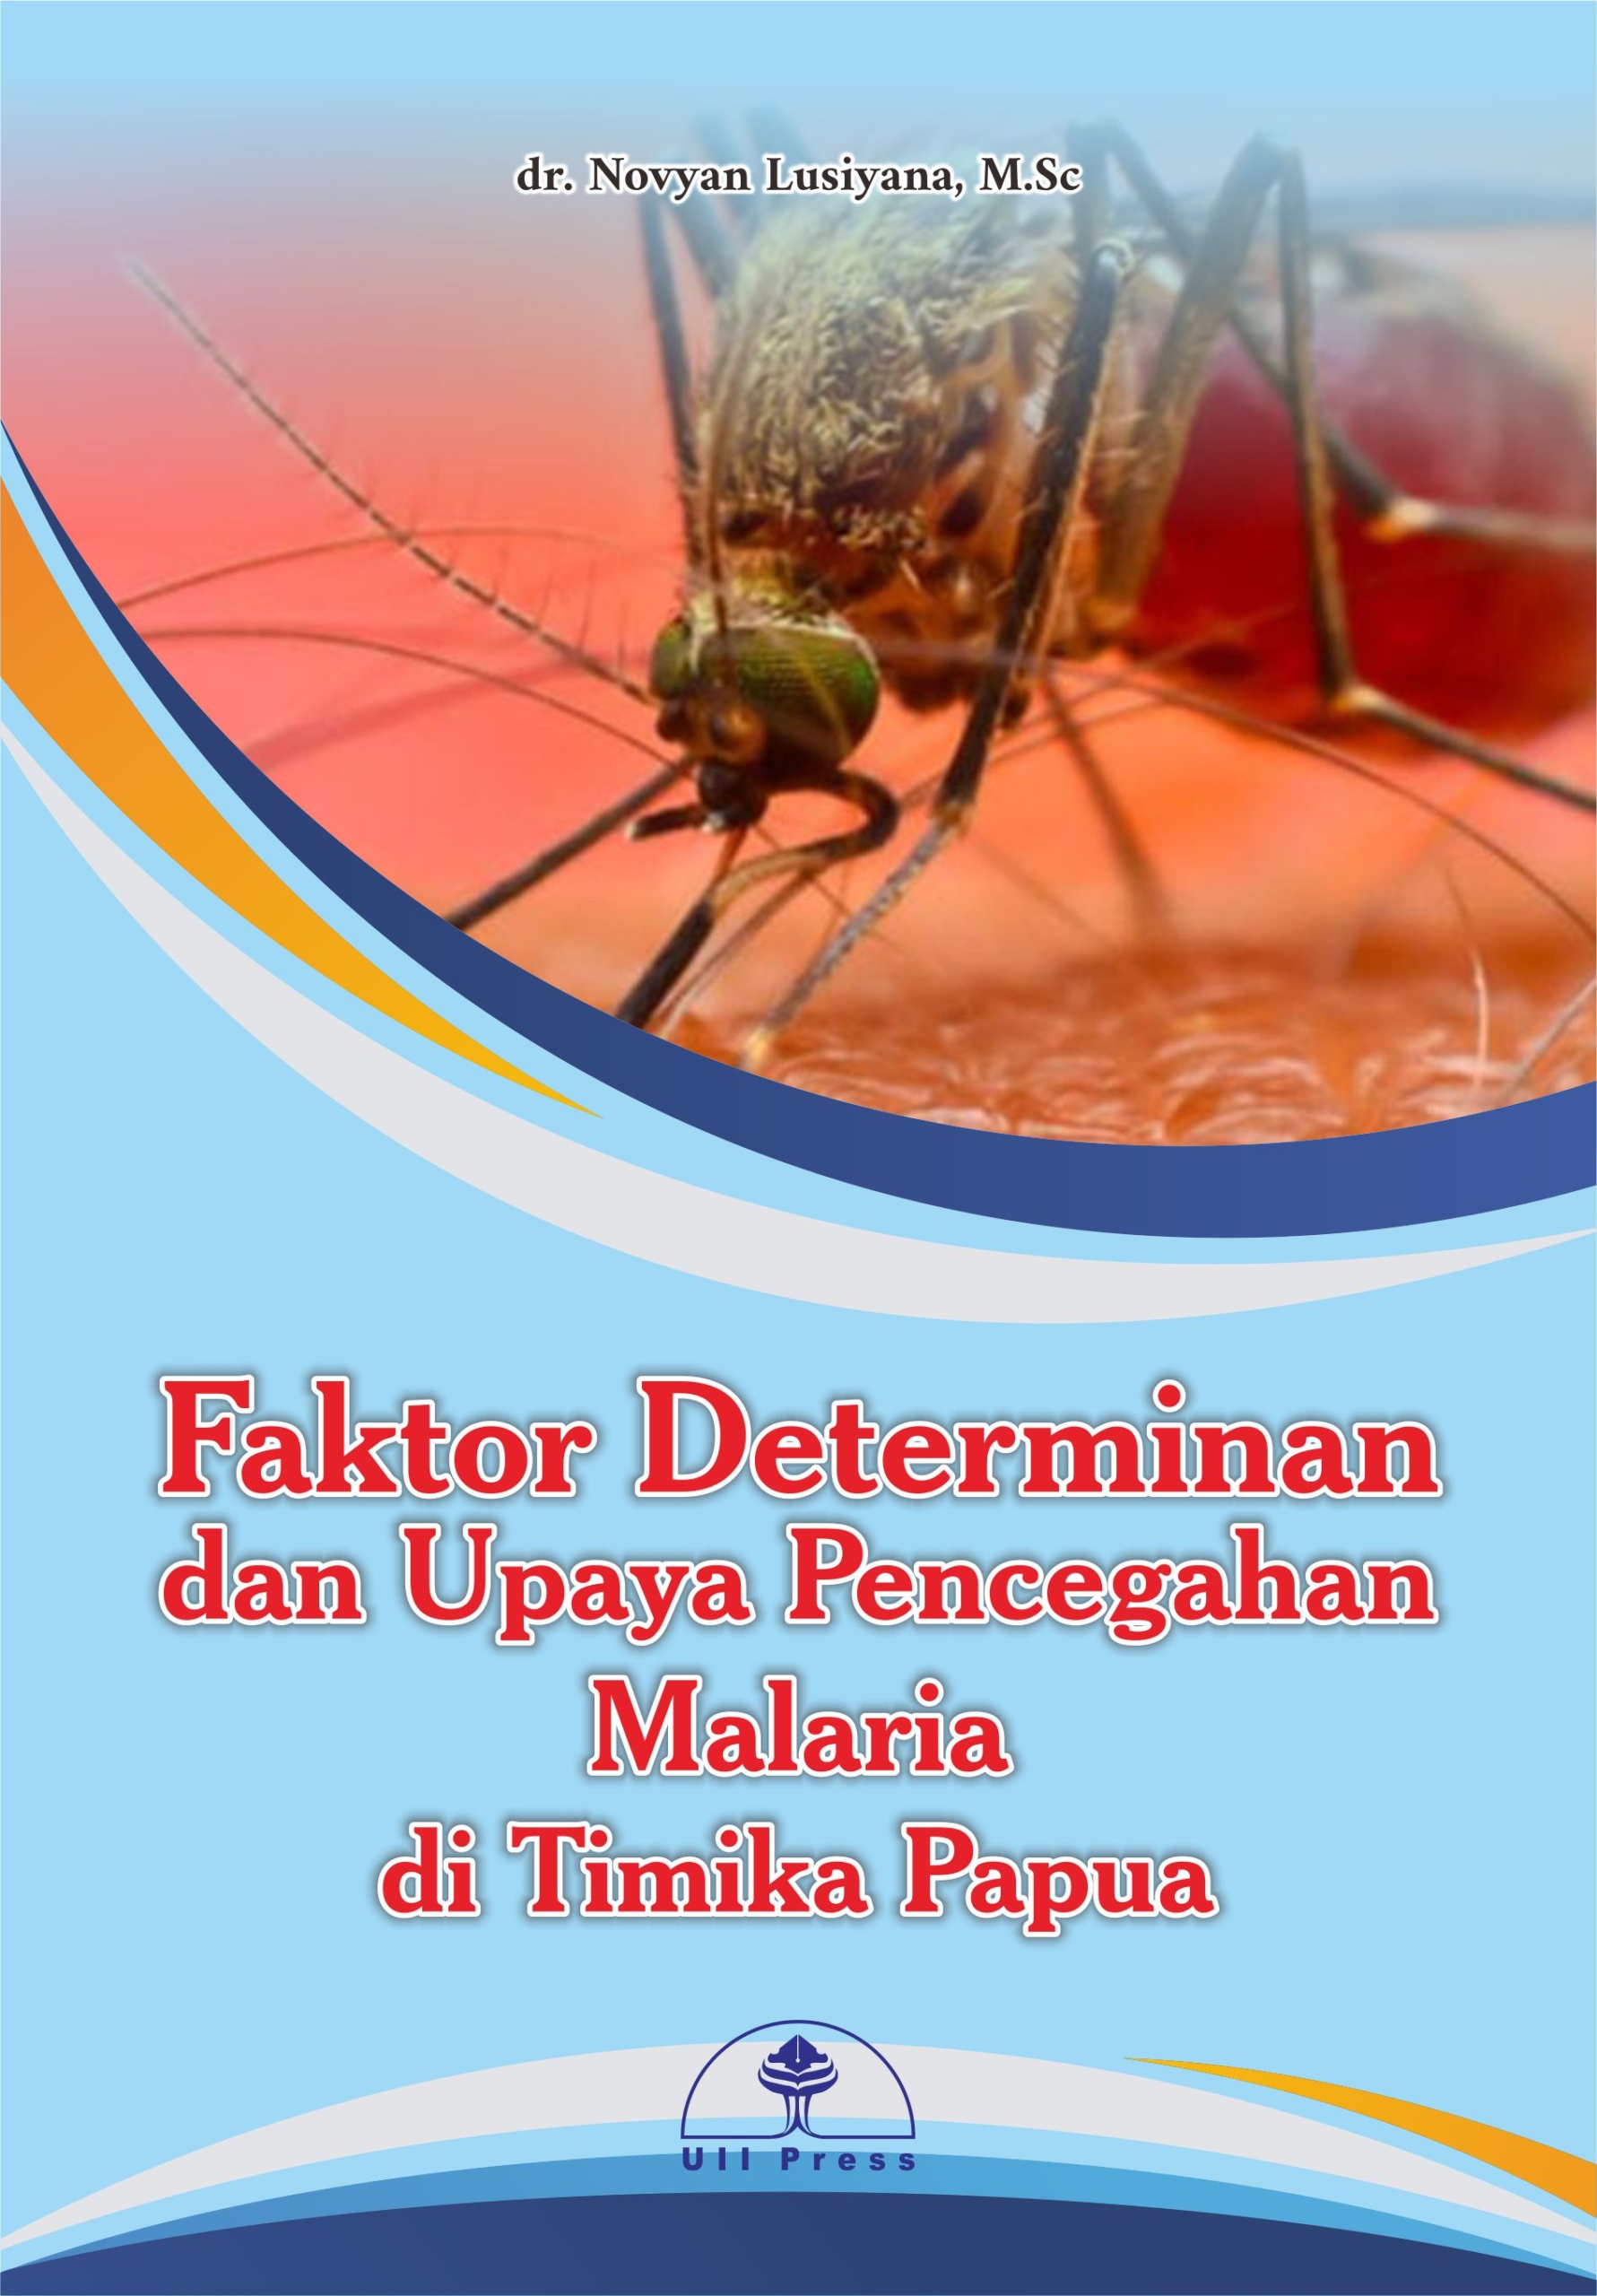 Faktor Determinan dan Upaya Pencegahan Malaria di Timika Papua